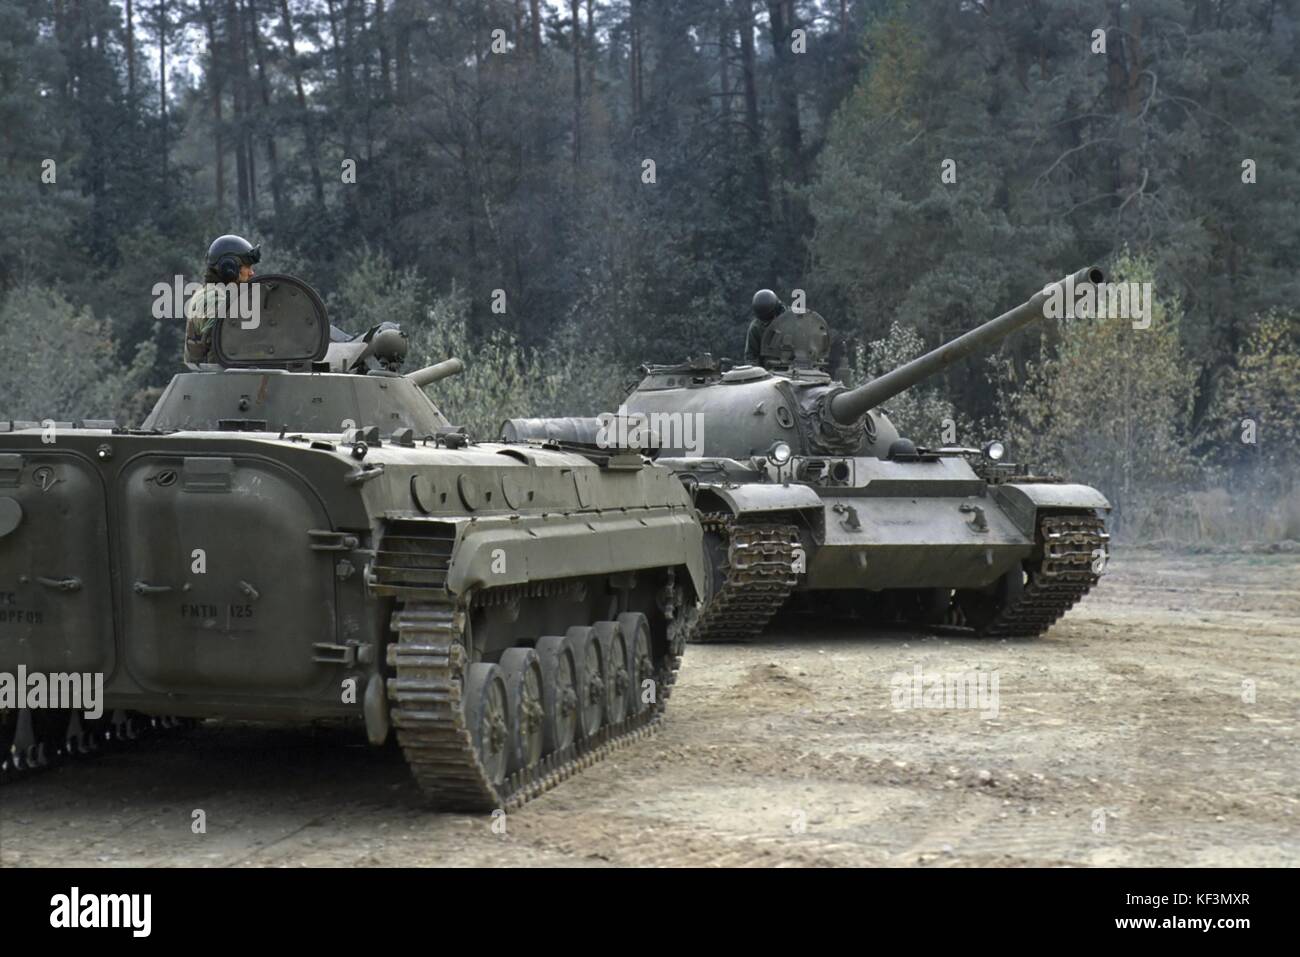 NATO in Germania; Esercito degli Stati Uniti, distaccamento per la formazione di materiali esteri (FMTD) nell'area di addestramento di Grafenwoehr; installazione per la formazione e la familiarizzazione con le attrezzature militari degli avversari sovietici e del Patto di Varsavia; veicolo da combattimento sovietico BMP e carro armato T 55 (ottobre 1985) Foto Stock